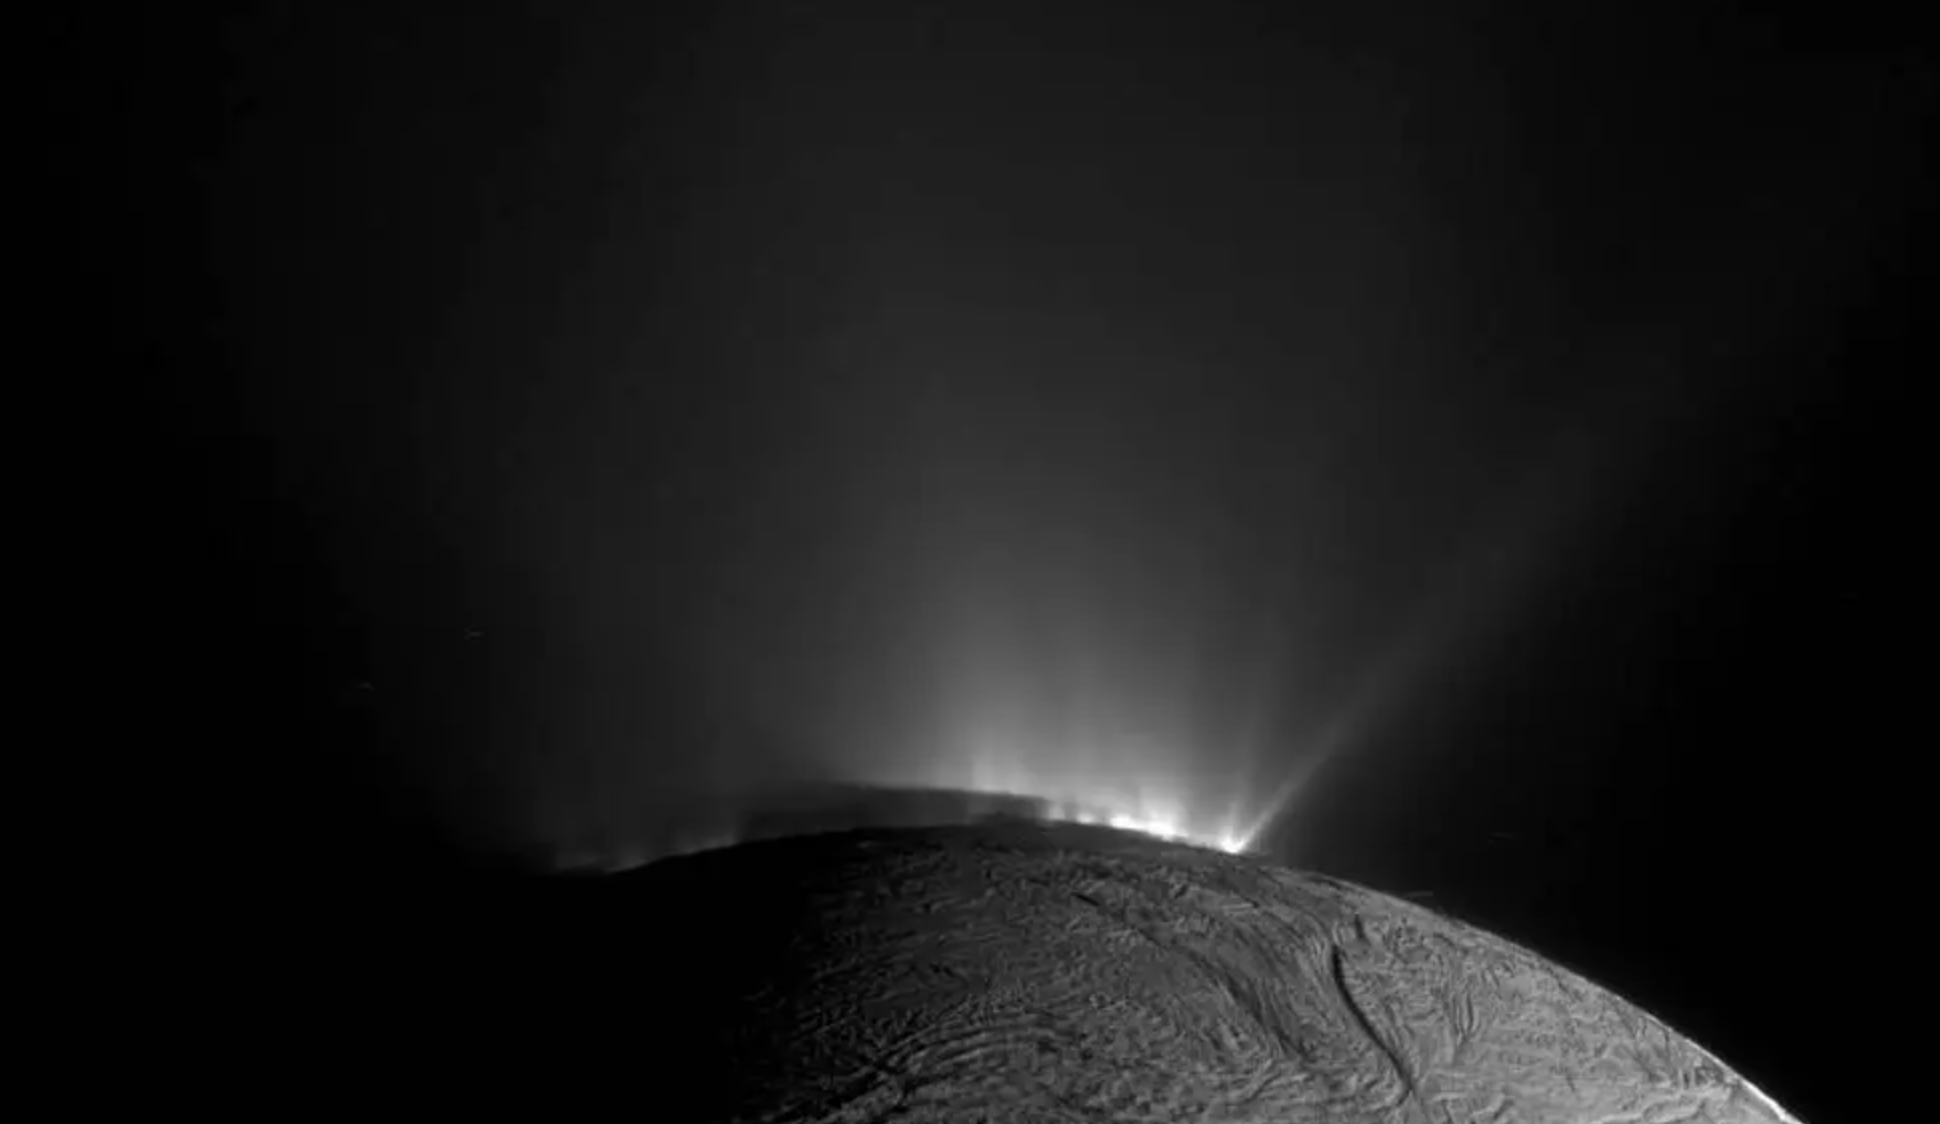 La sombra de Encélado sobre las partes inferiores de los géiseres es claramente visible en esta imagen en blanco y negro captada por la sonda Cassini de la NASA.